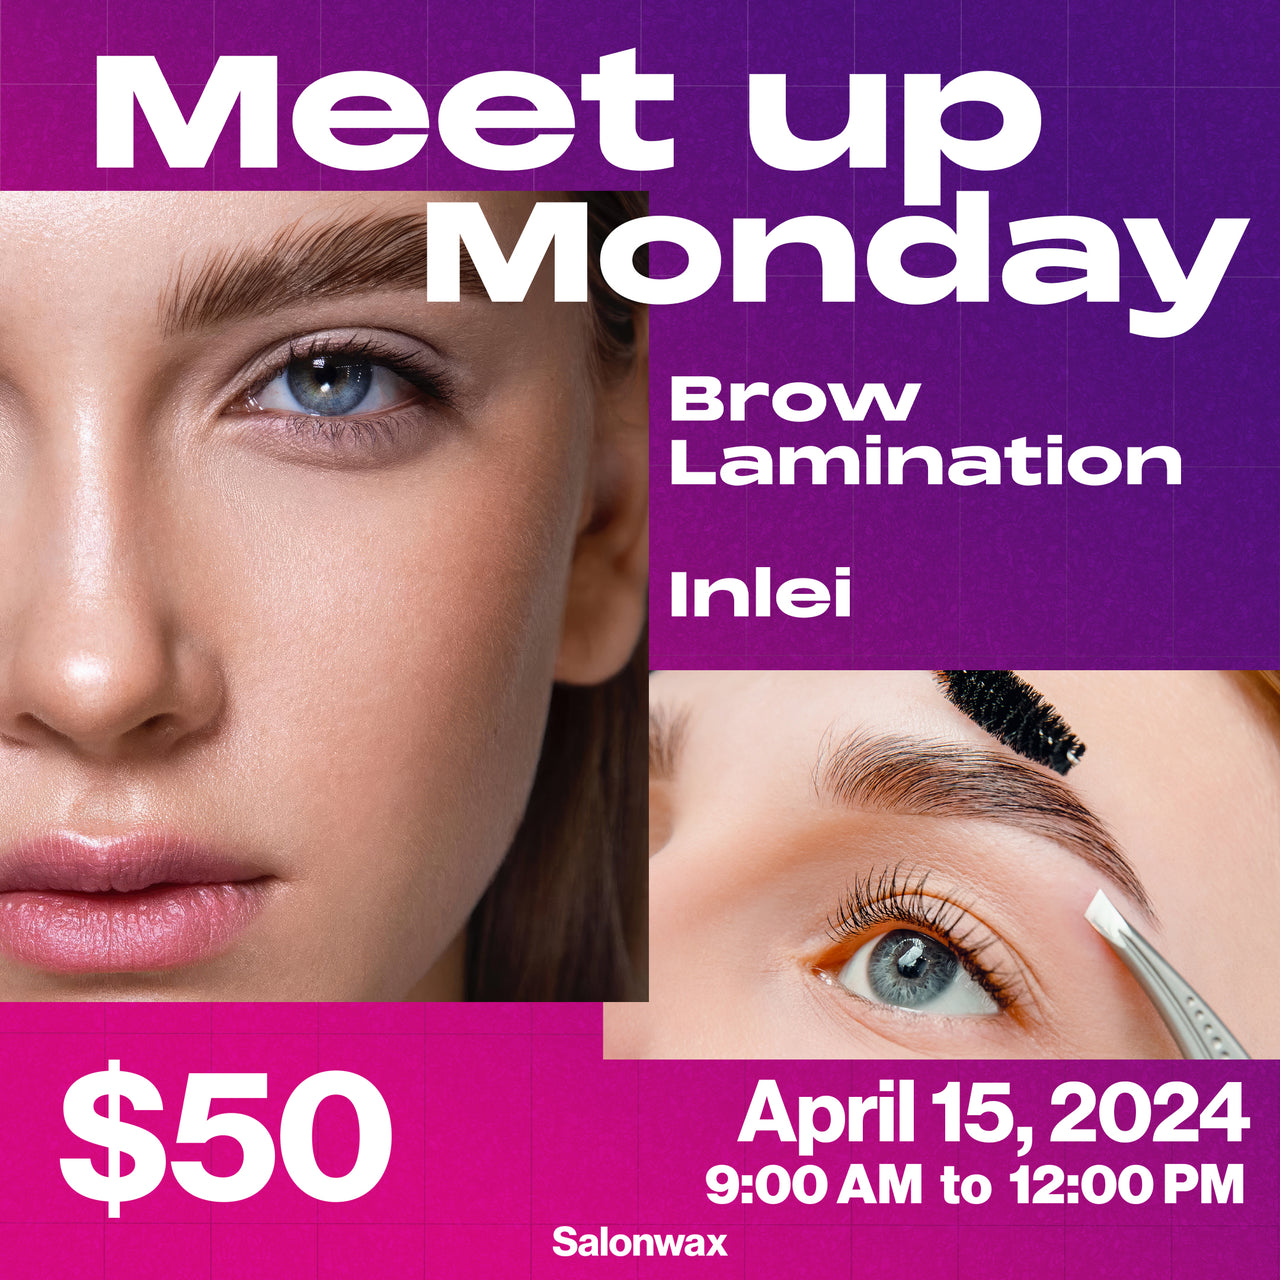 Meet Up Monday- Inlei Brow Lamination April 15th